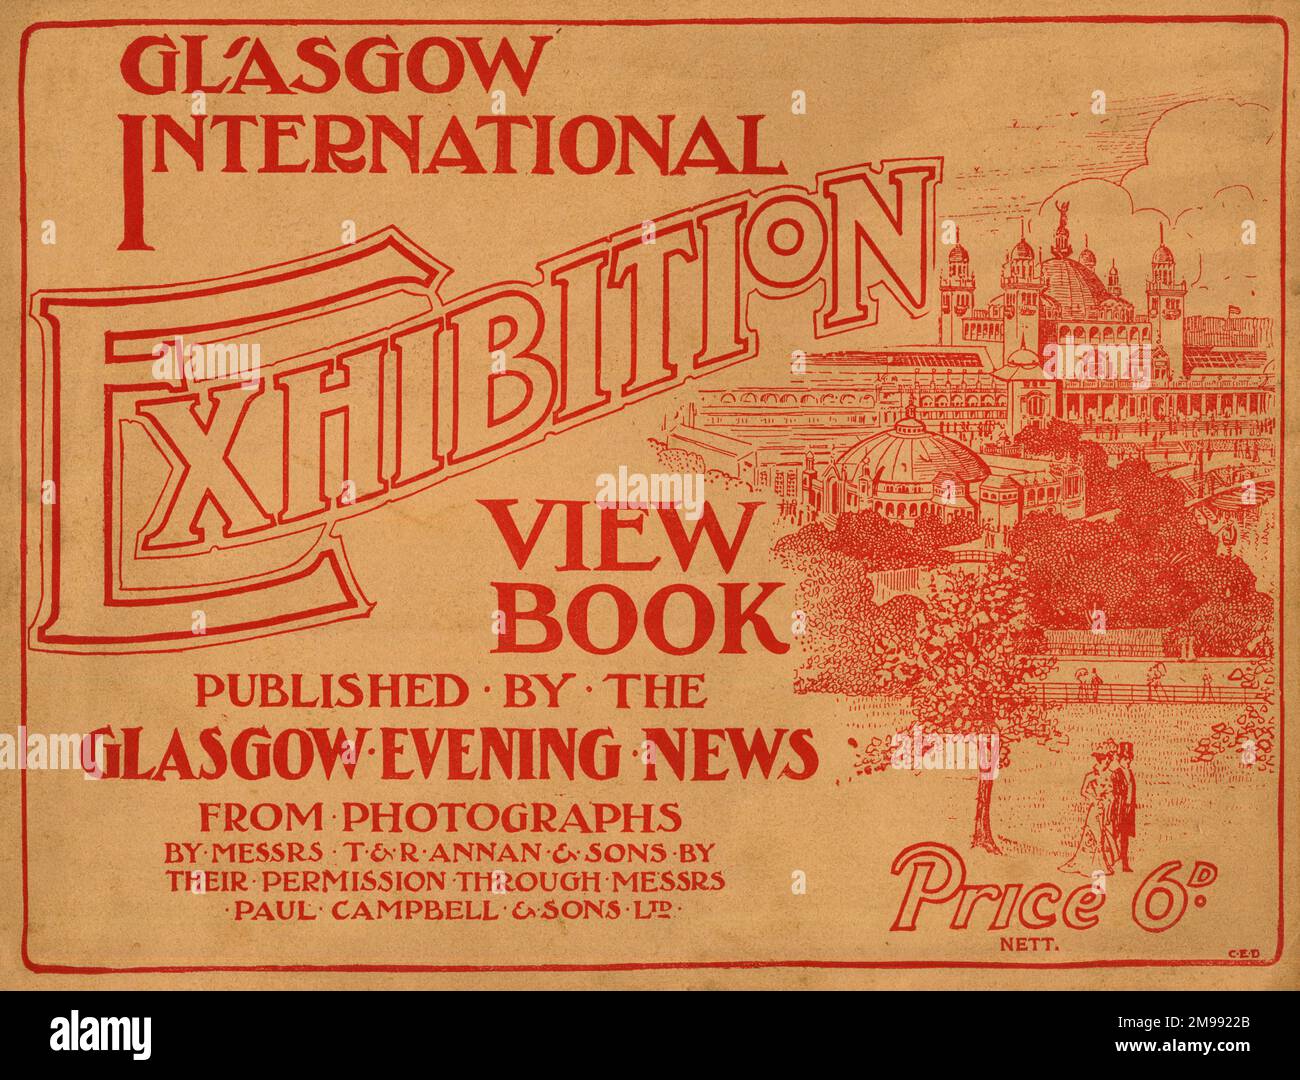 Exposition internationale de Glasgow, 1901 - conception de couverture de View Book publié par The Glasgow Evening News. Banque D'Images